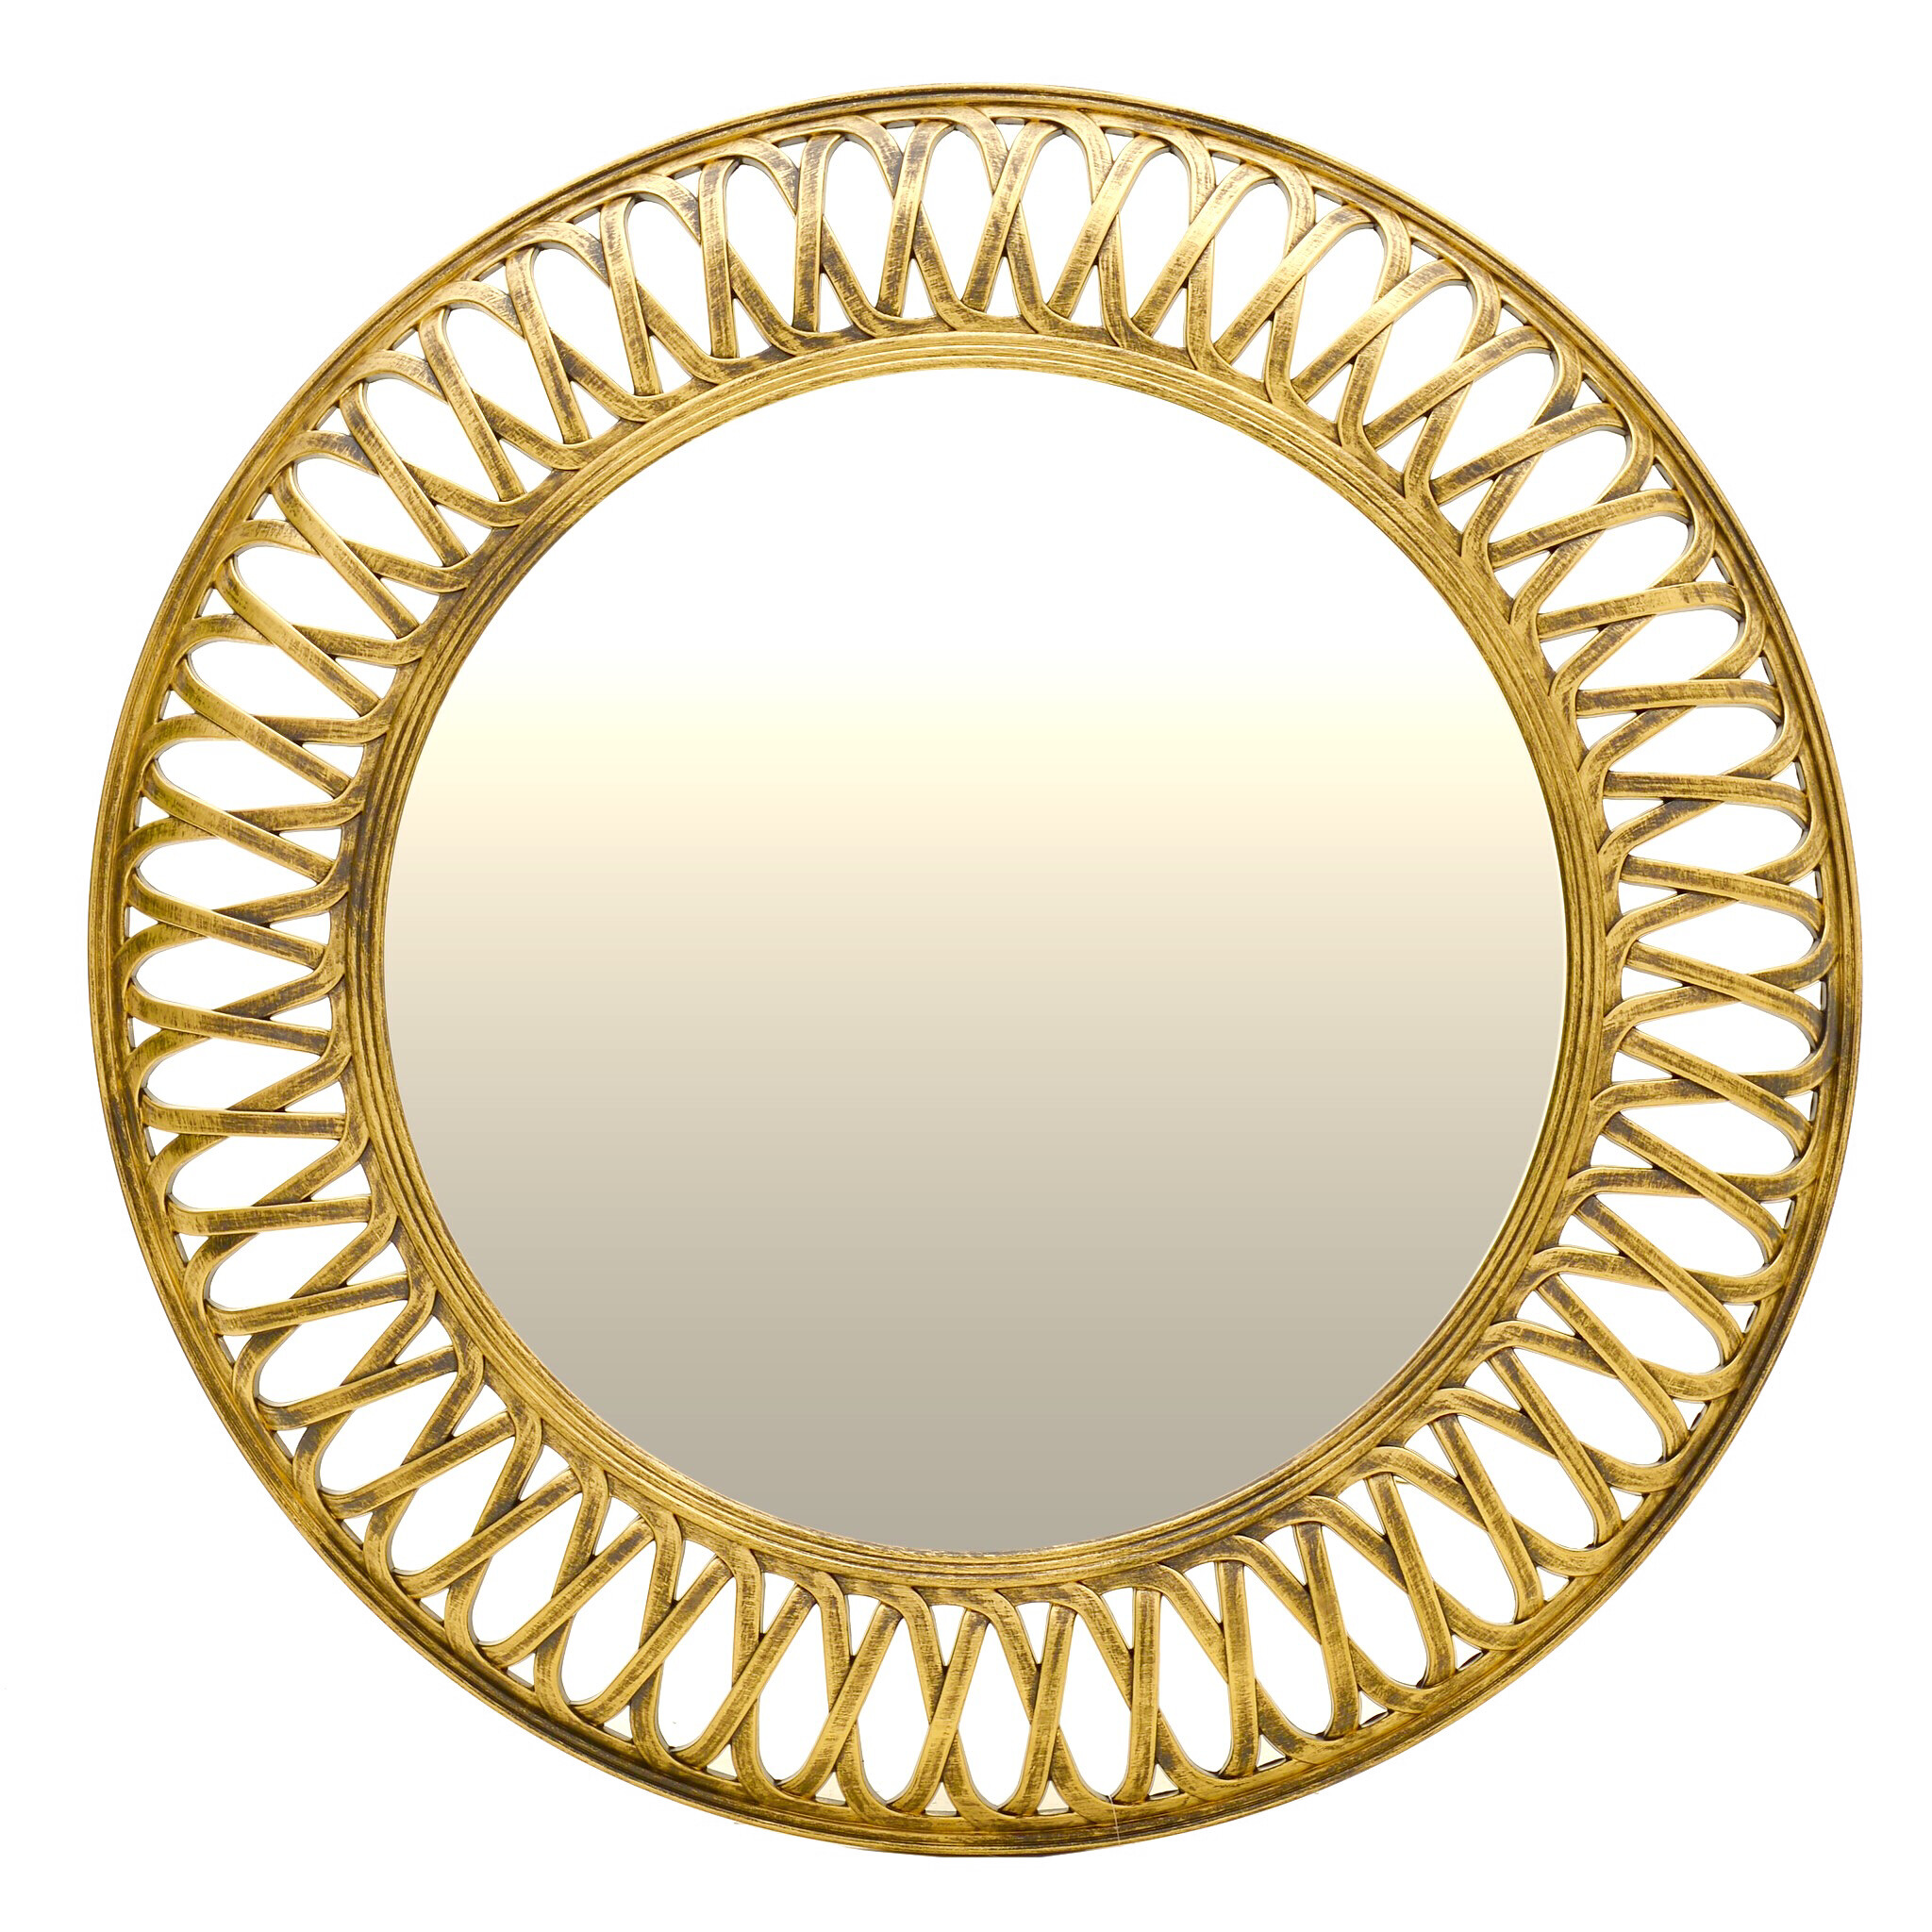 Круглое зеркало настенное золотое 76 см